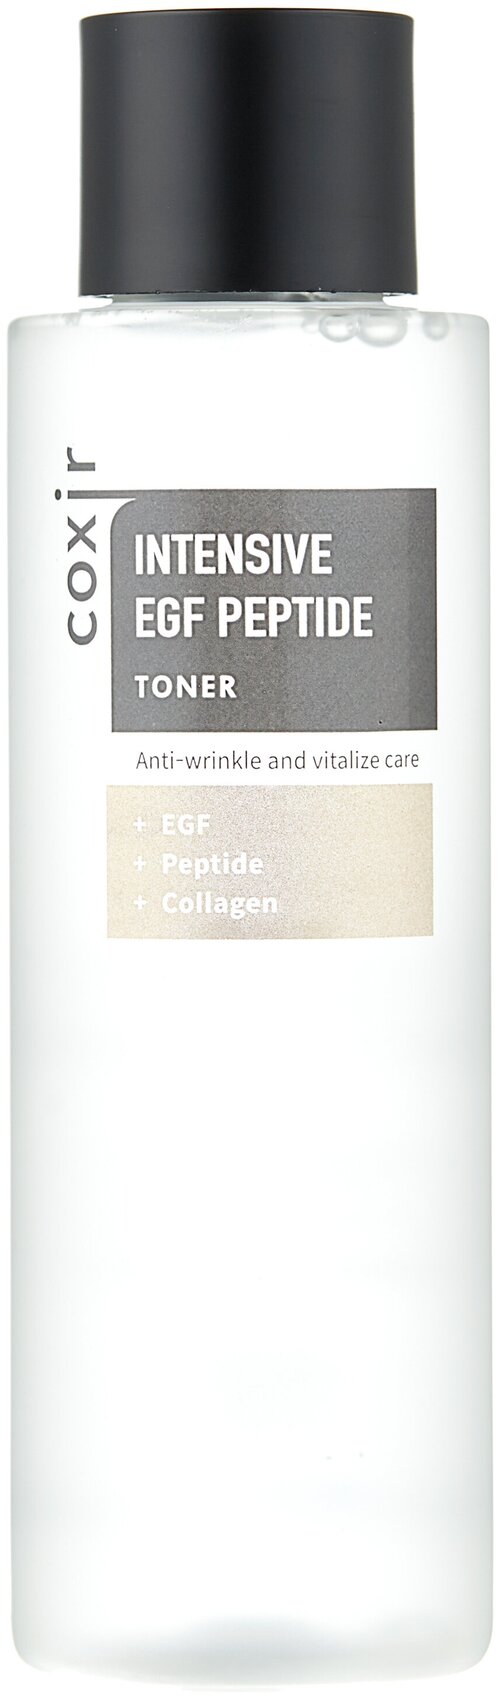 Coxir Тонер с пептидами и EGF для регенерации кожи INTENSIVE EGF PEPTIDE, 150 мл